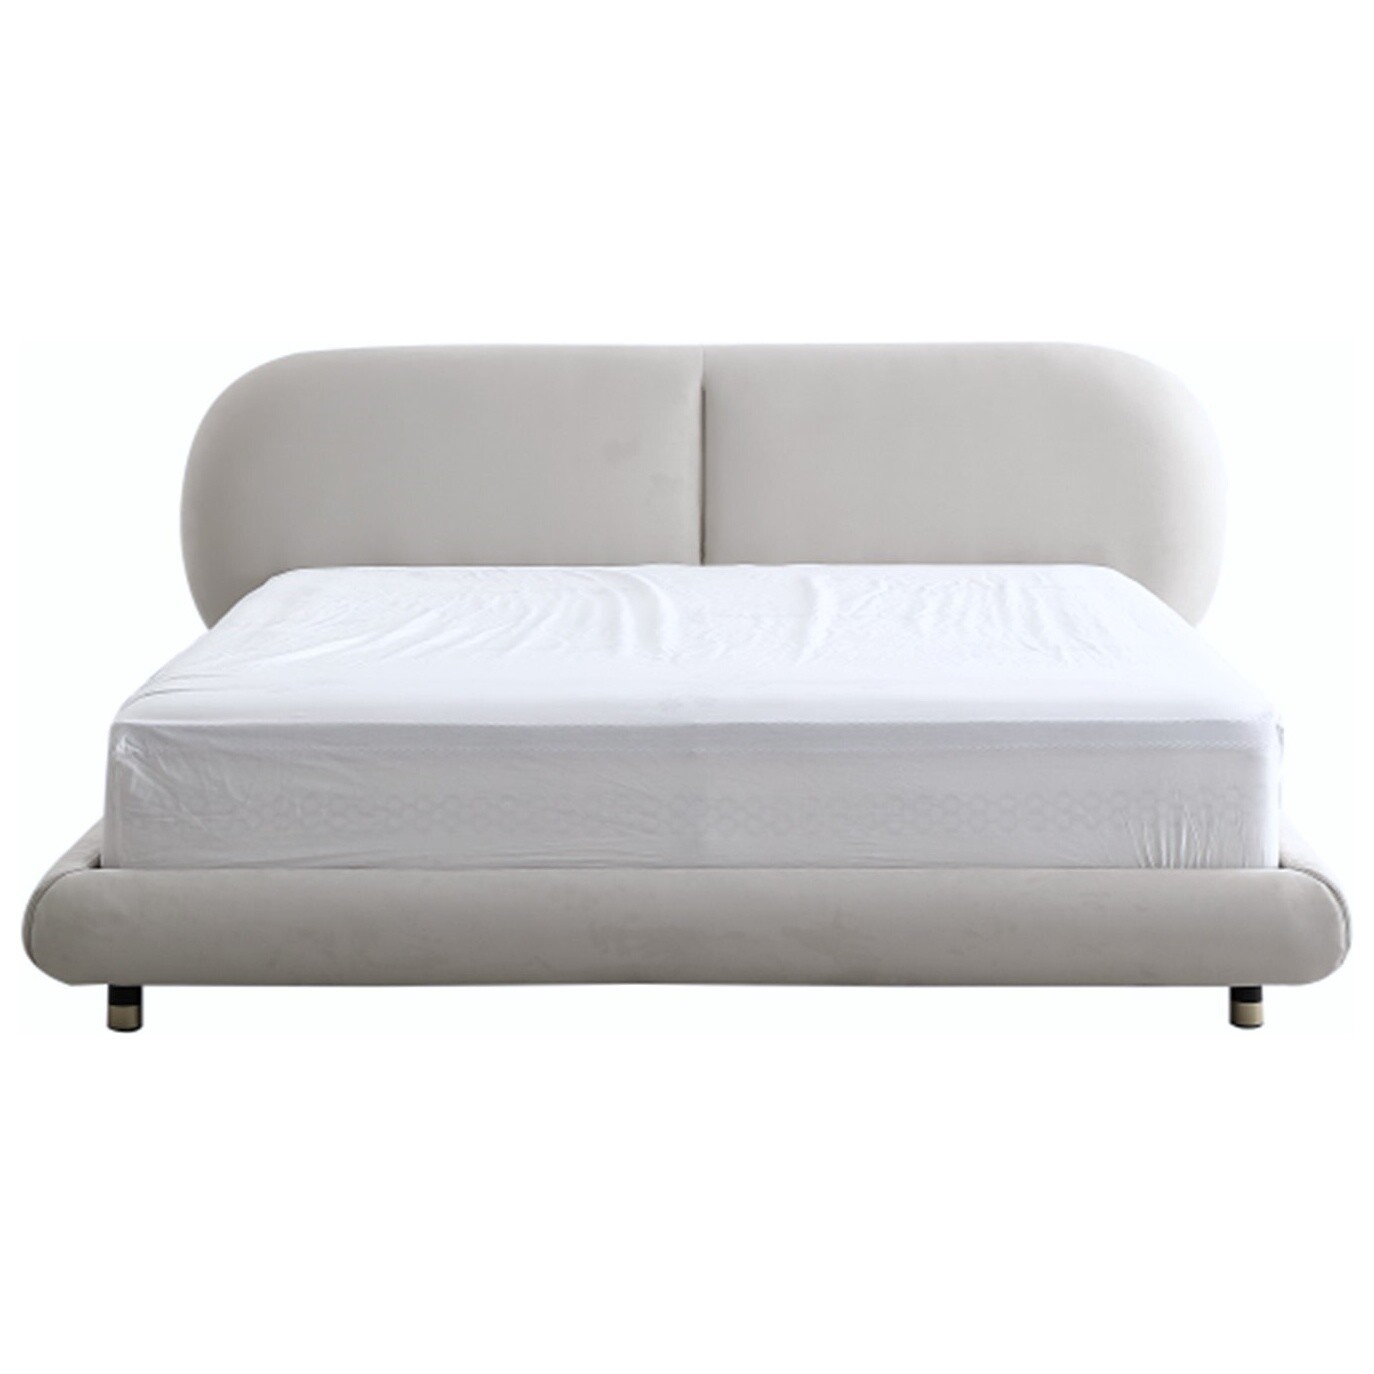 Кровать двуспальная с мягким изголовьем 180х200 см белая Coco